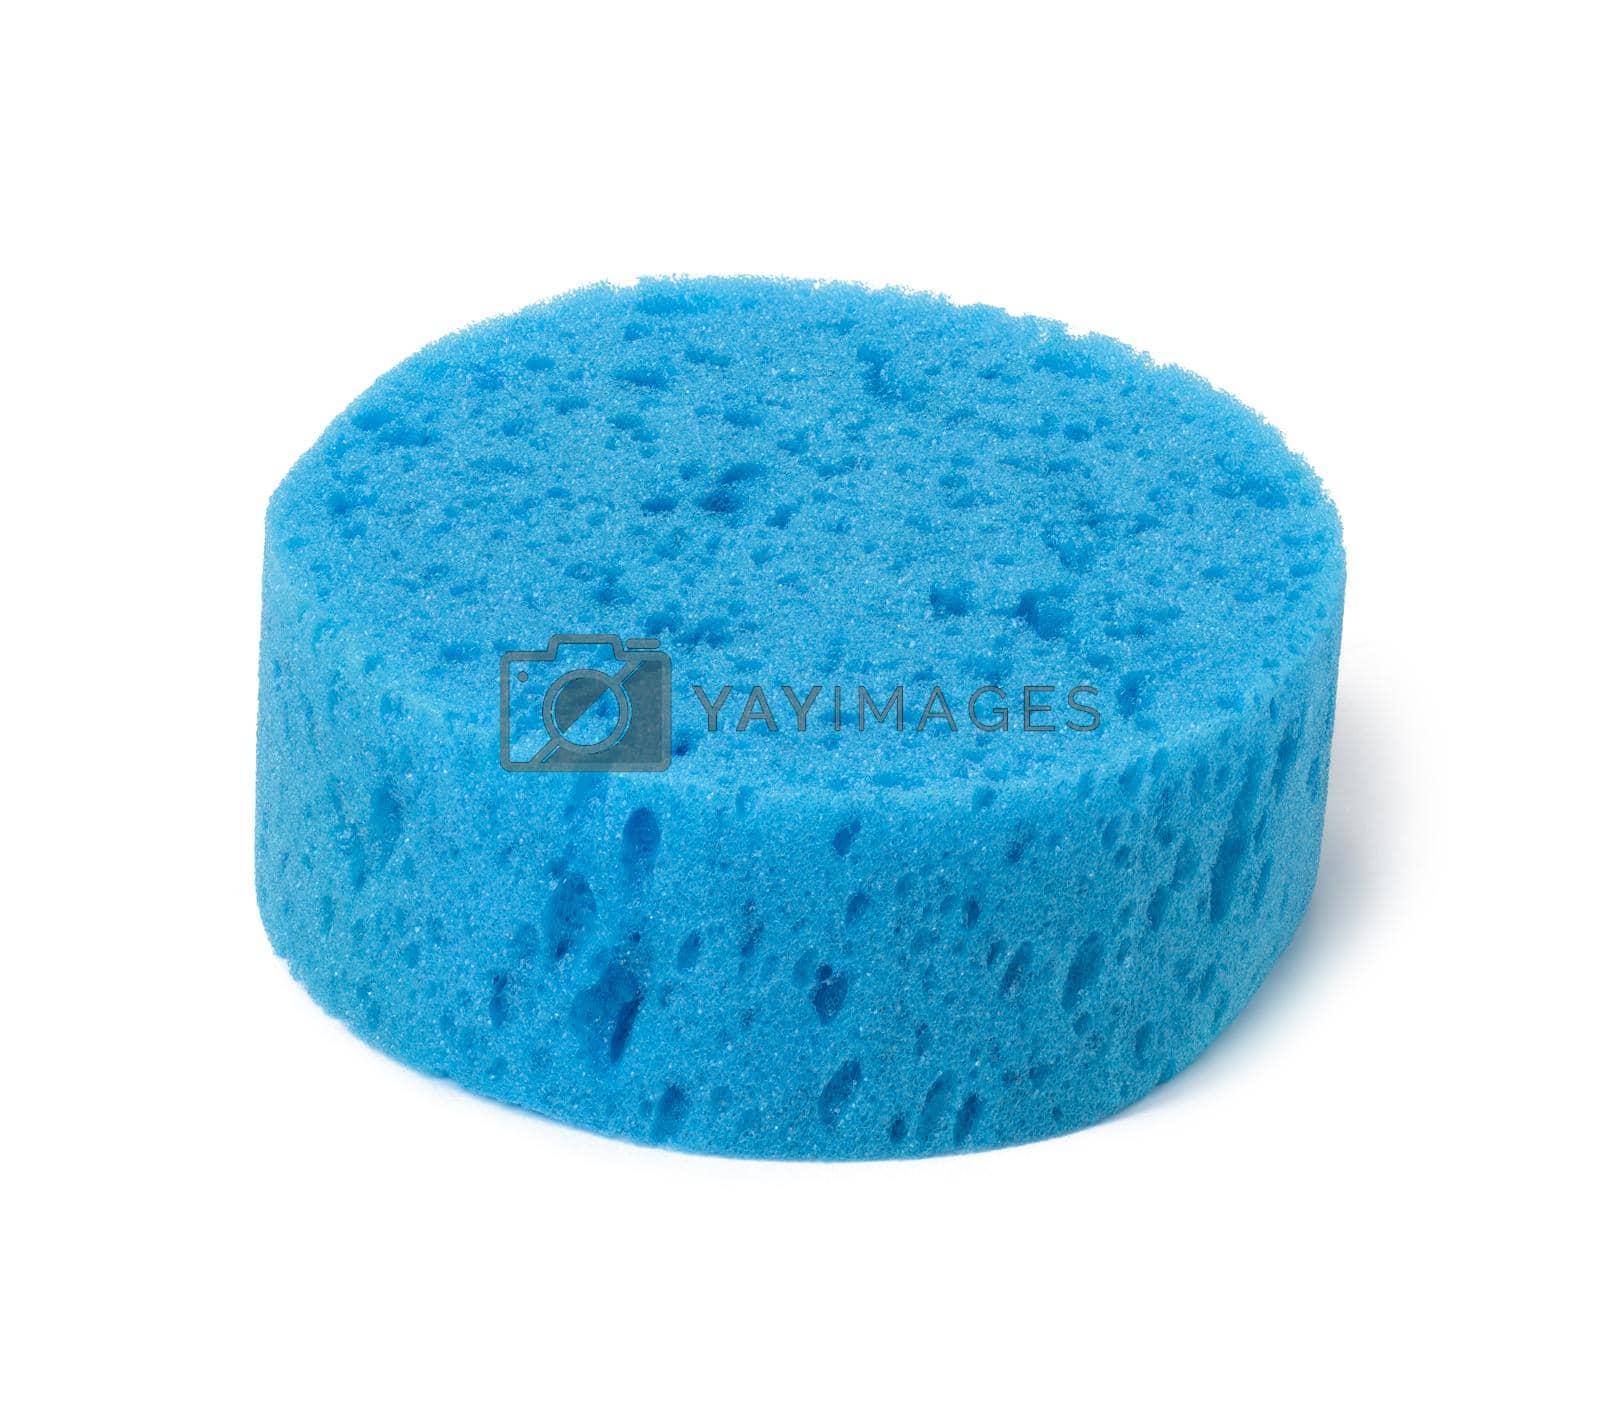 Royalty free image of round blue bath sponge isolated on white background by ndanko